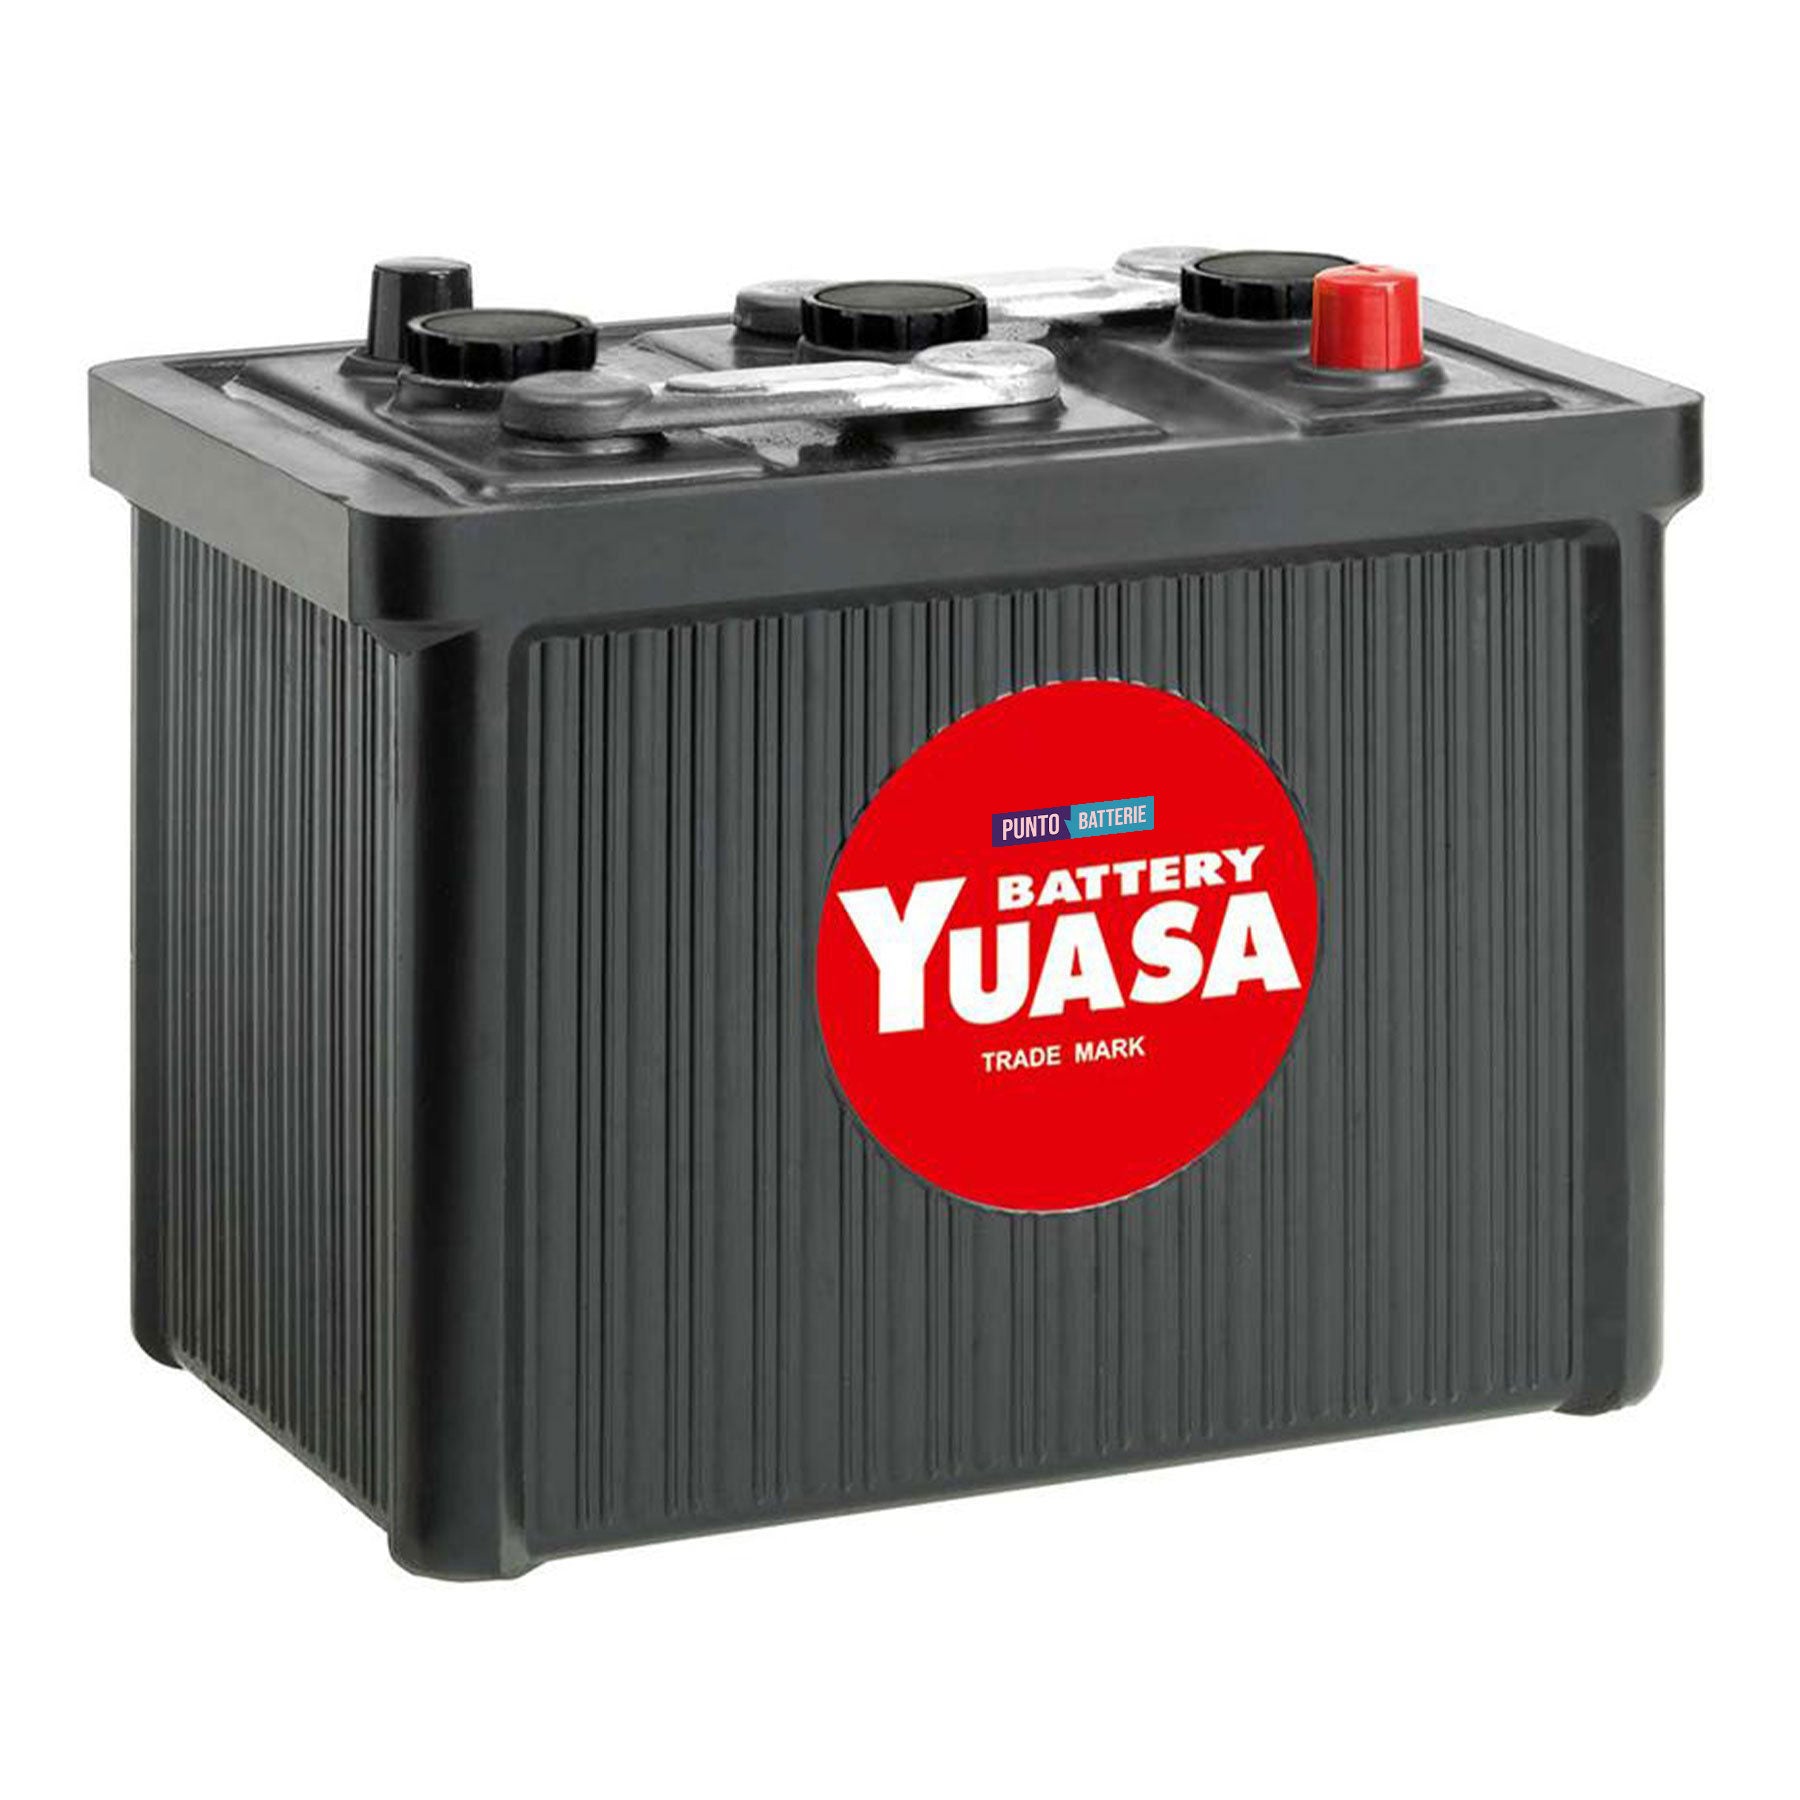 Batteria originale Yuasa Classic e Oldtimer 501, dimensioni 224 x 173 x 217, polo positivo a destra, 6 volt, 85 amperora, 385 ampere. Batteria per veicoli d'epoca.